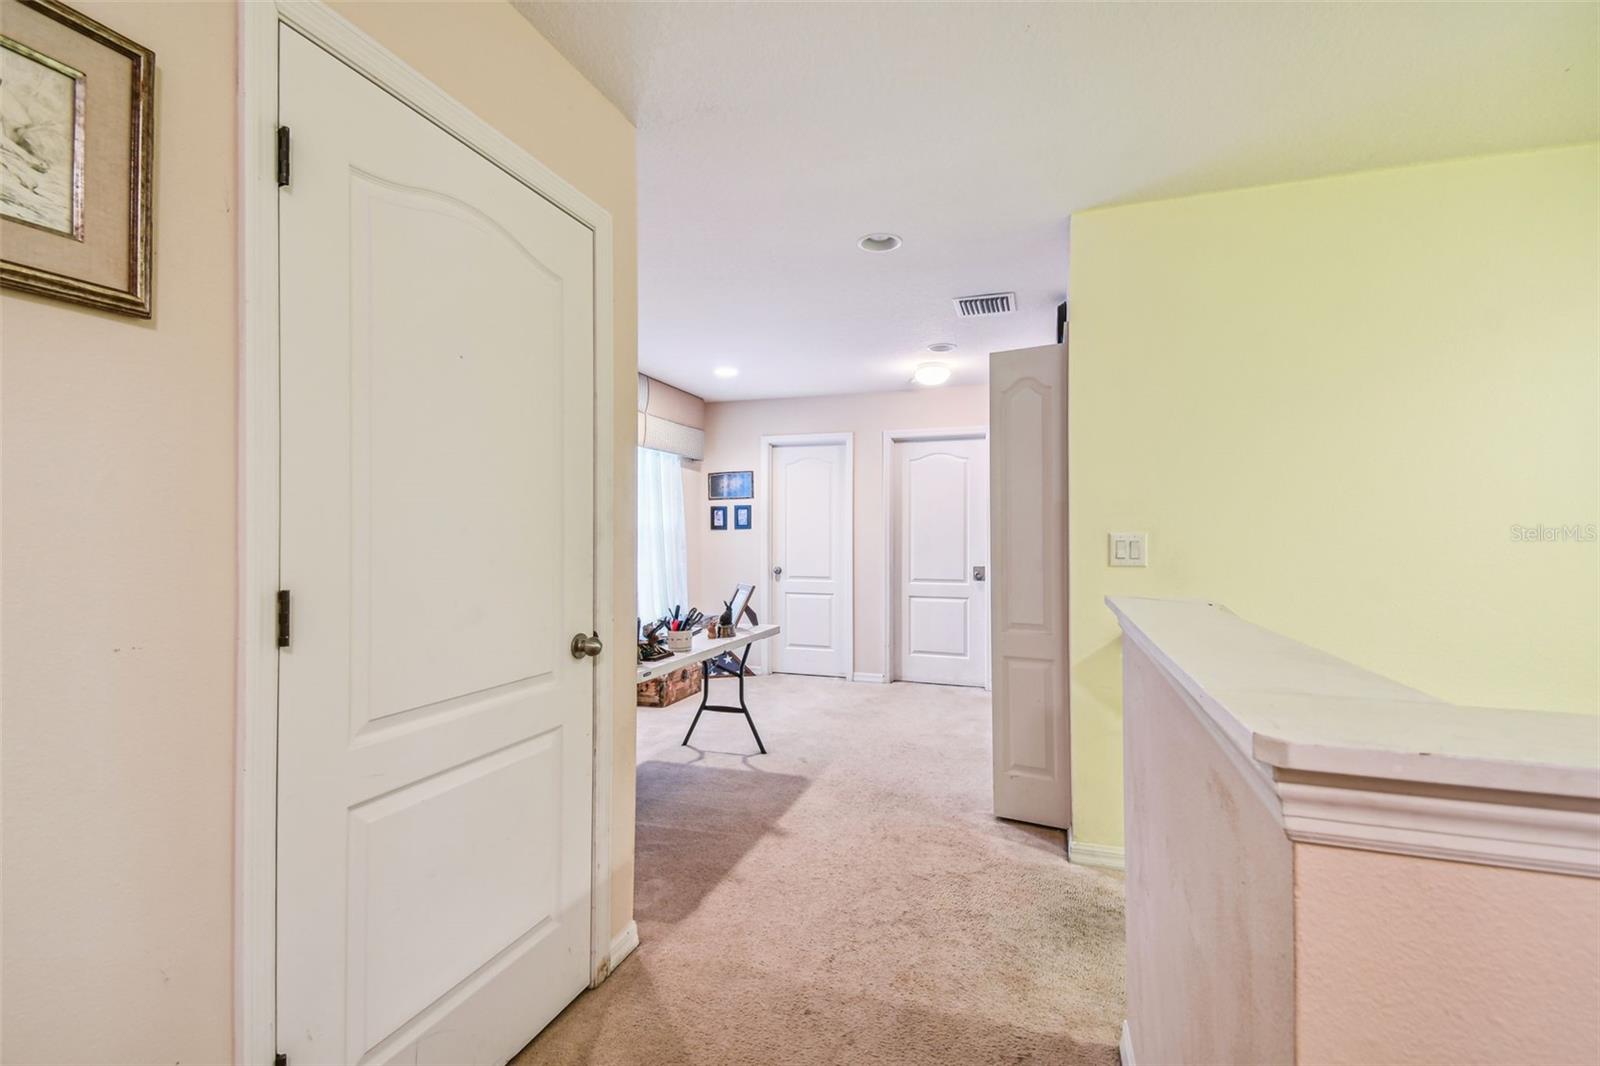 Door to second bedroom/Hallway to Loft